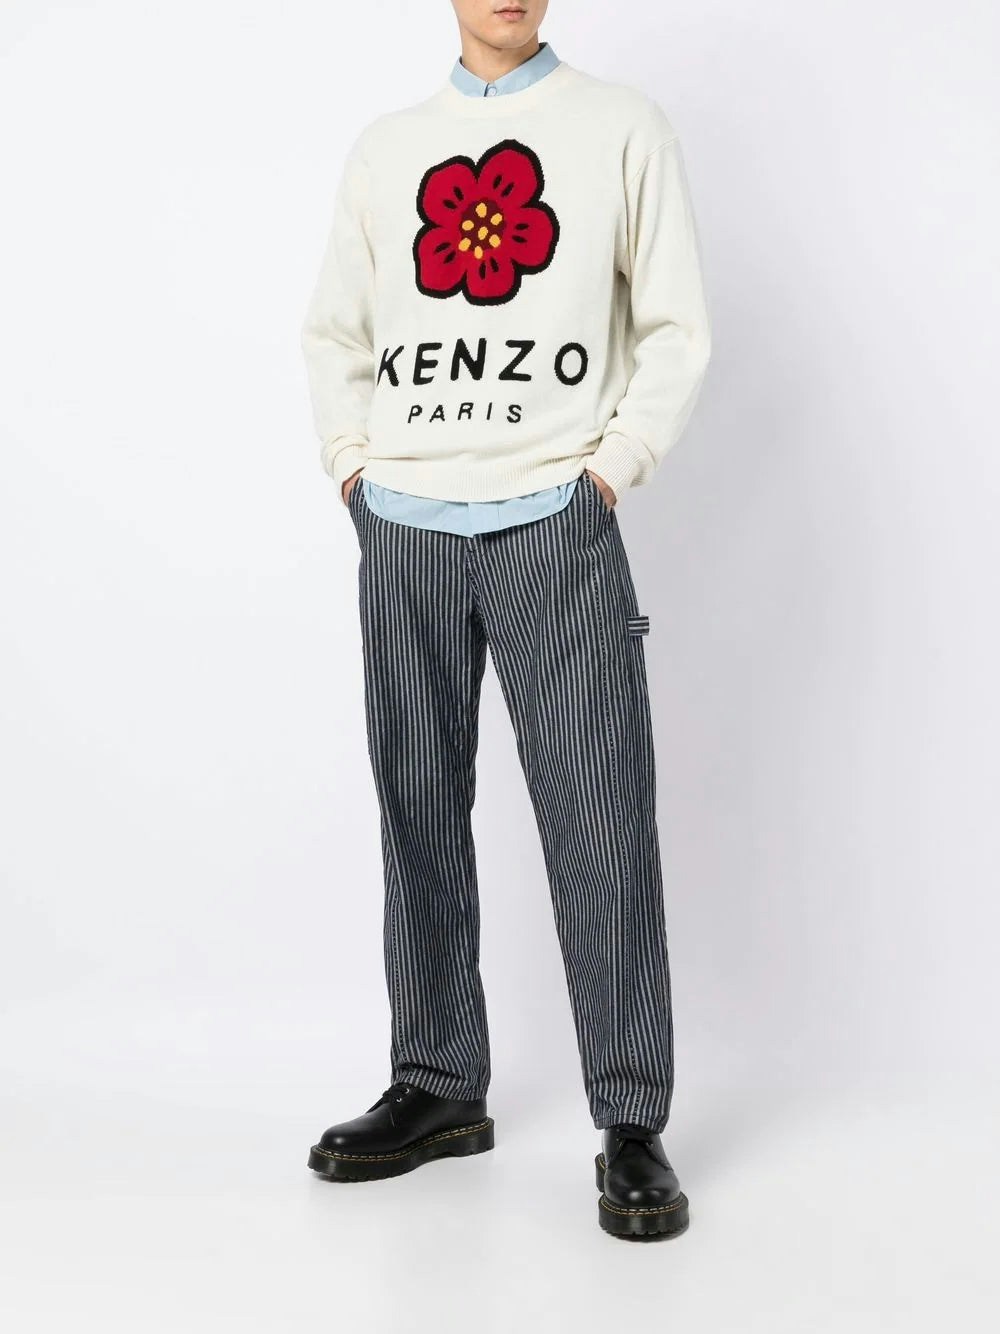 02 KENZO JERSEY "BOKE FLOWER"